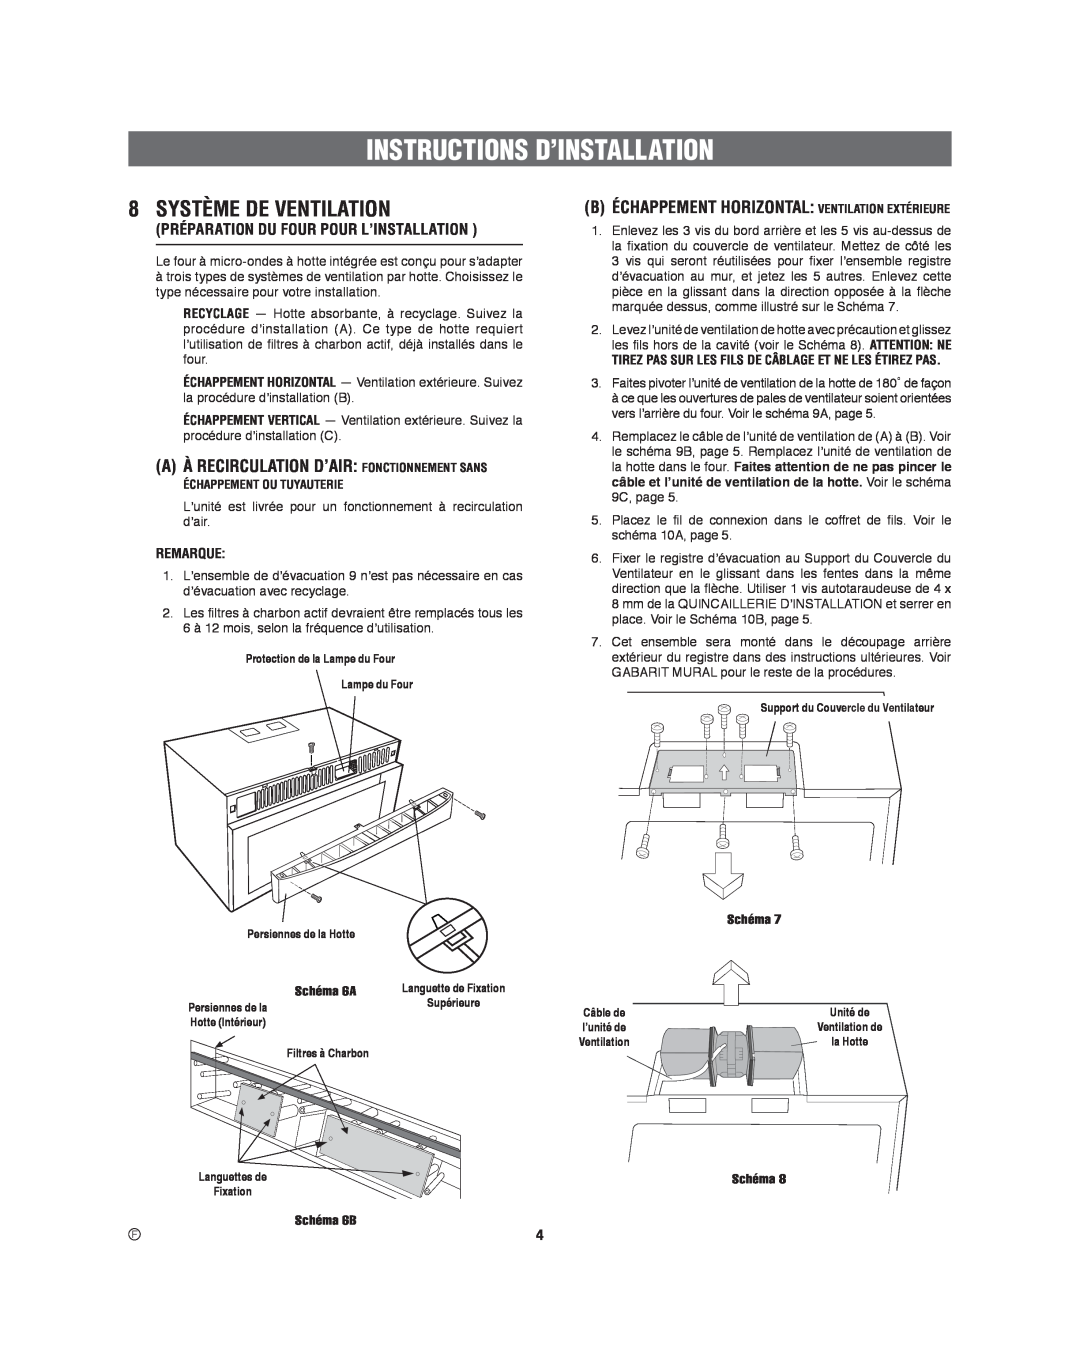 Frigidaire 316495060 Système De Ventilation, A À Recirculation D’Air Fonctionnement Sans, Instructions D’Installation 